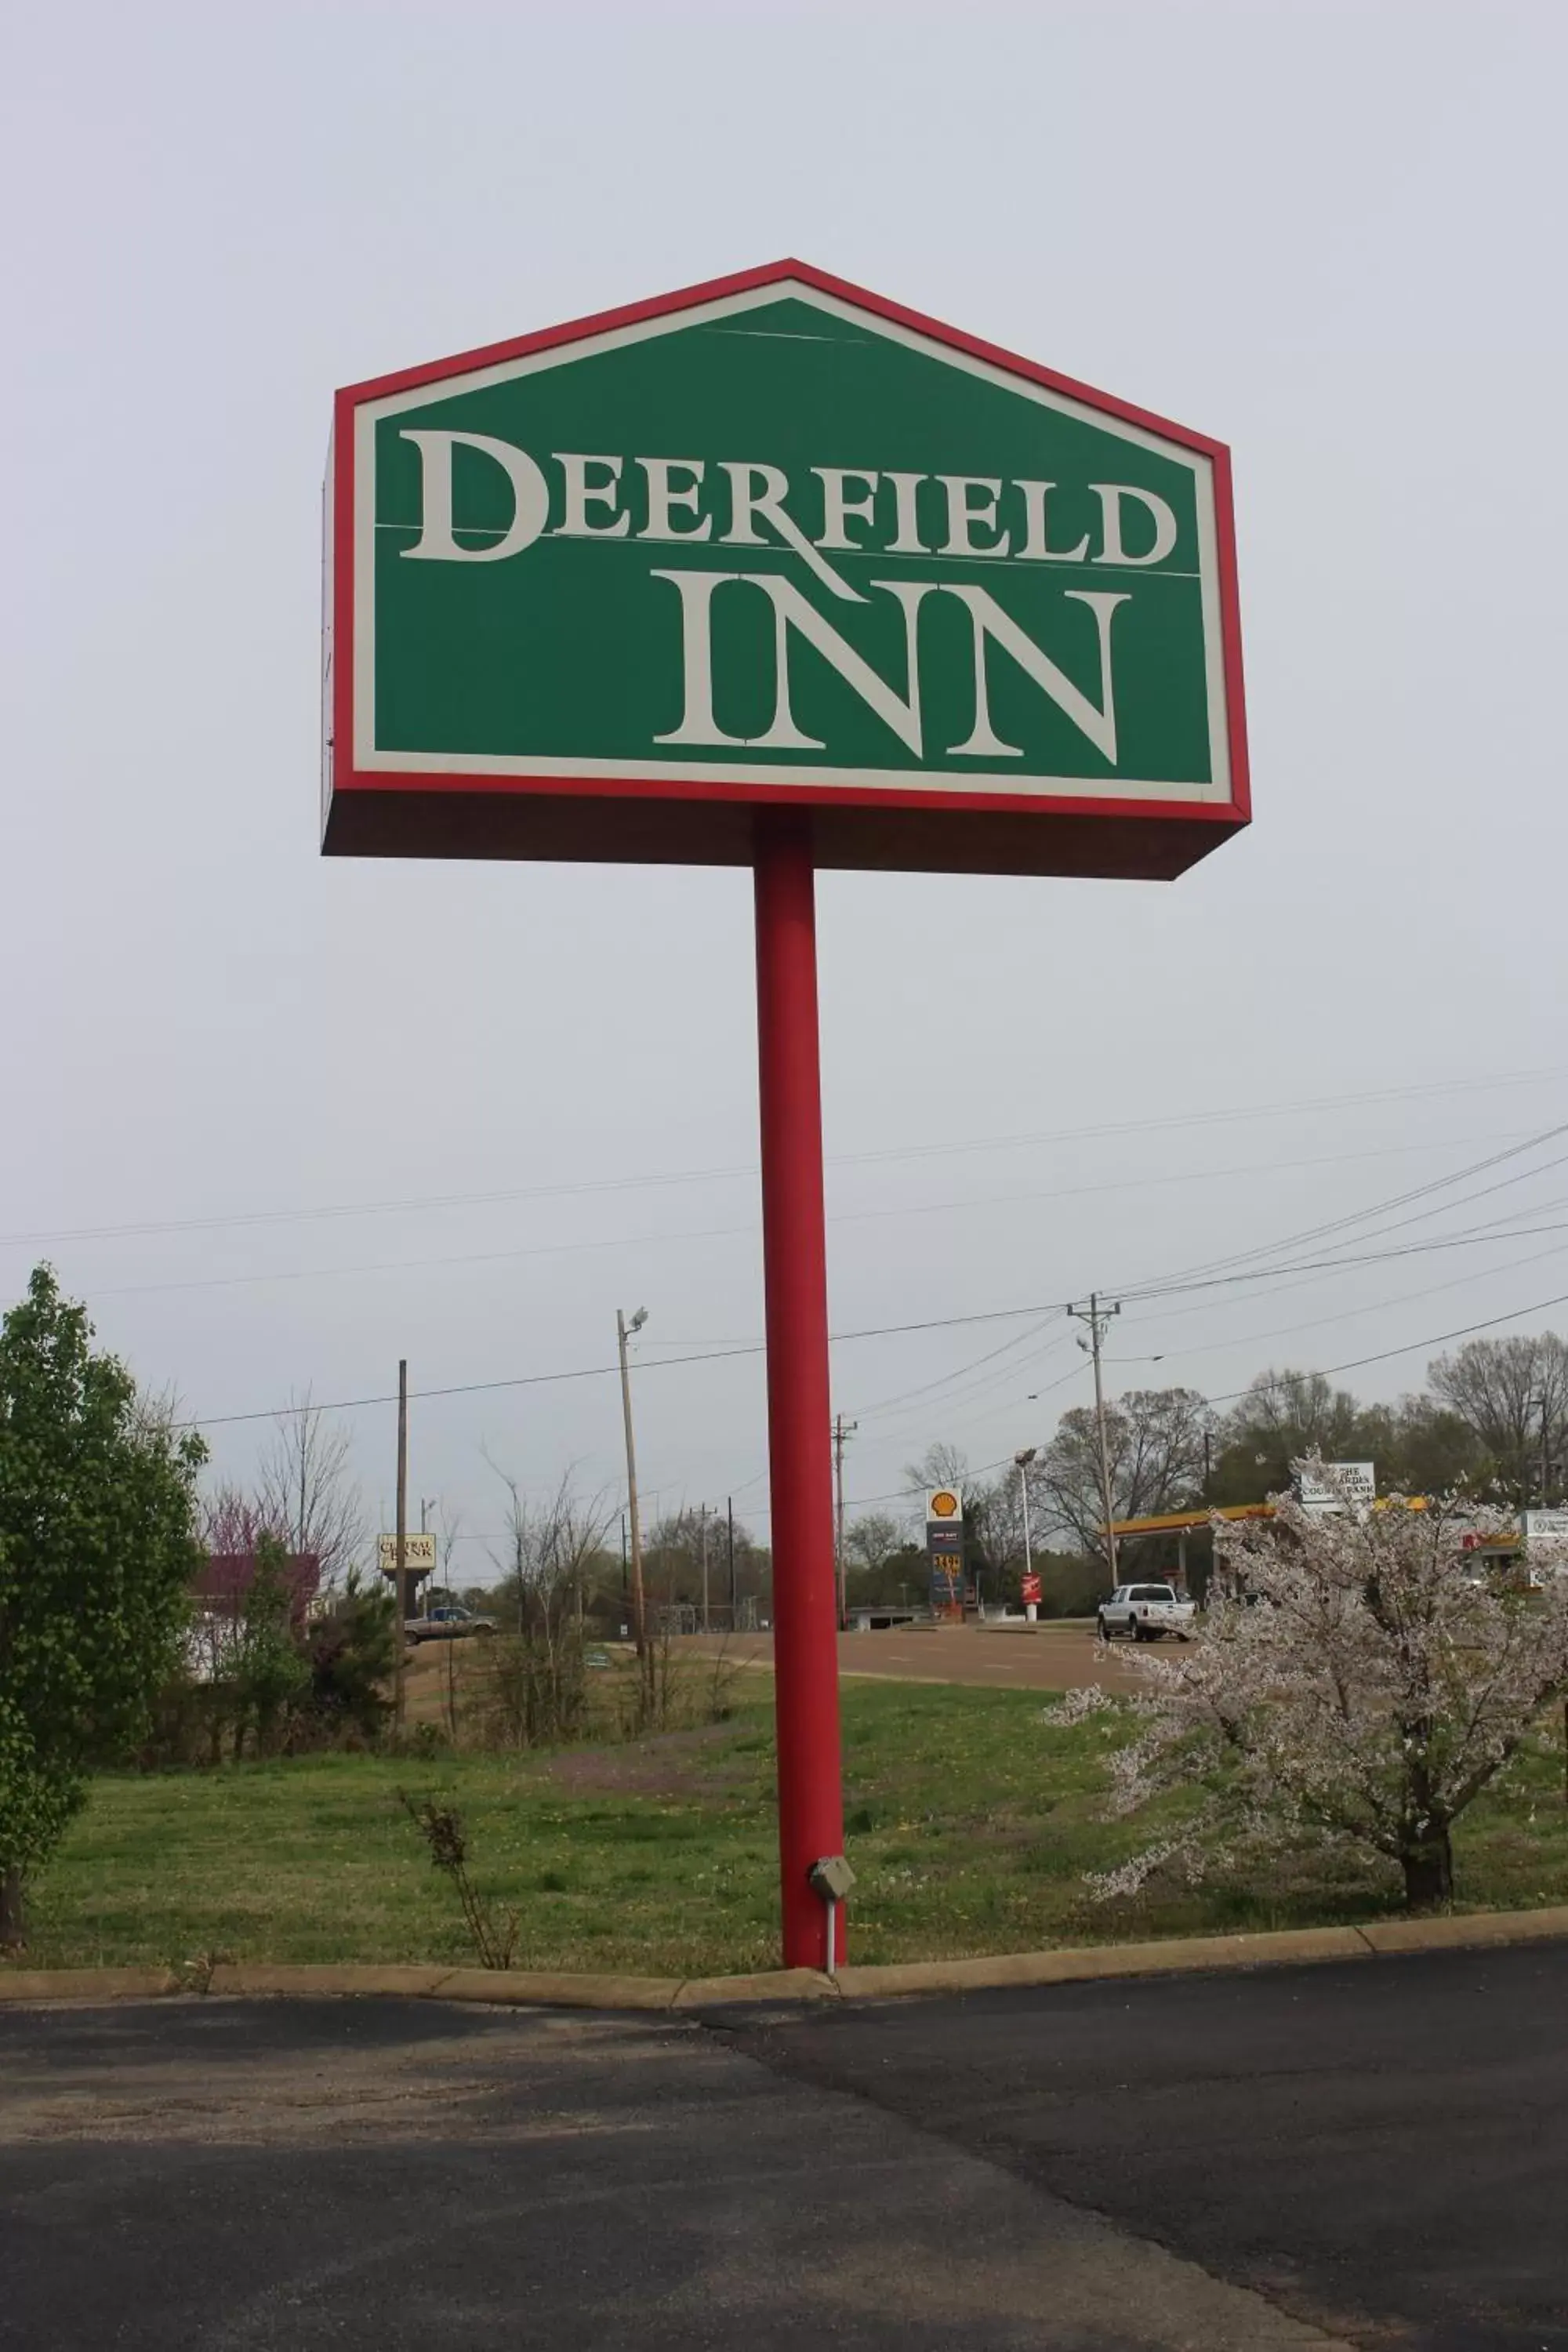 Property logo or sign in Deerfield Inn